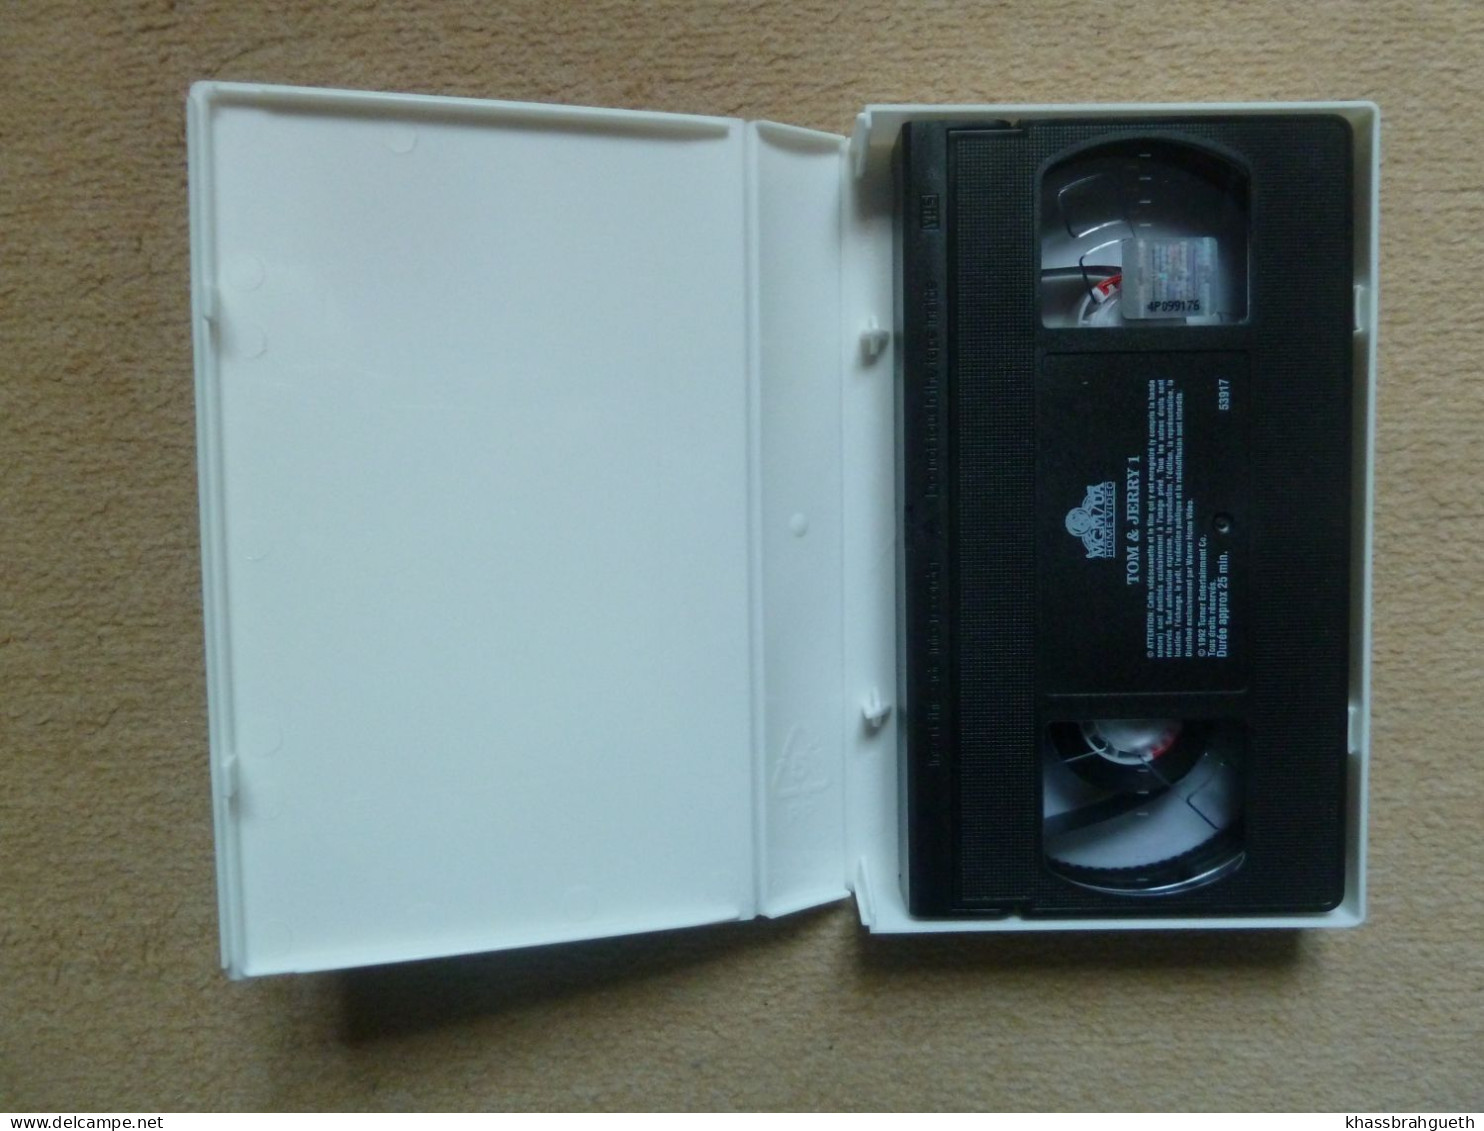 TOM & JERRY 1 (CASSETTE VHS) - MGM HOME VIDEO 1992 - Dessins Animés